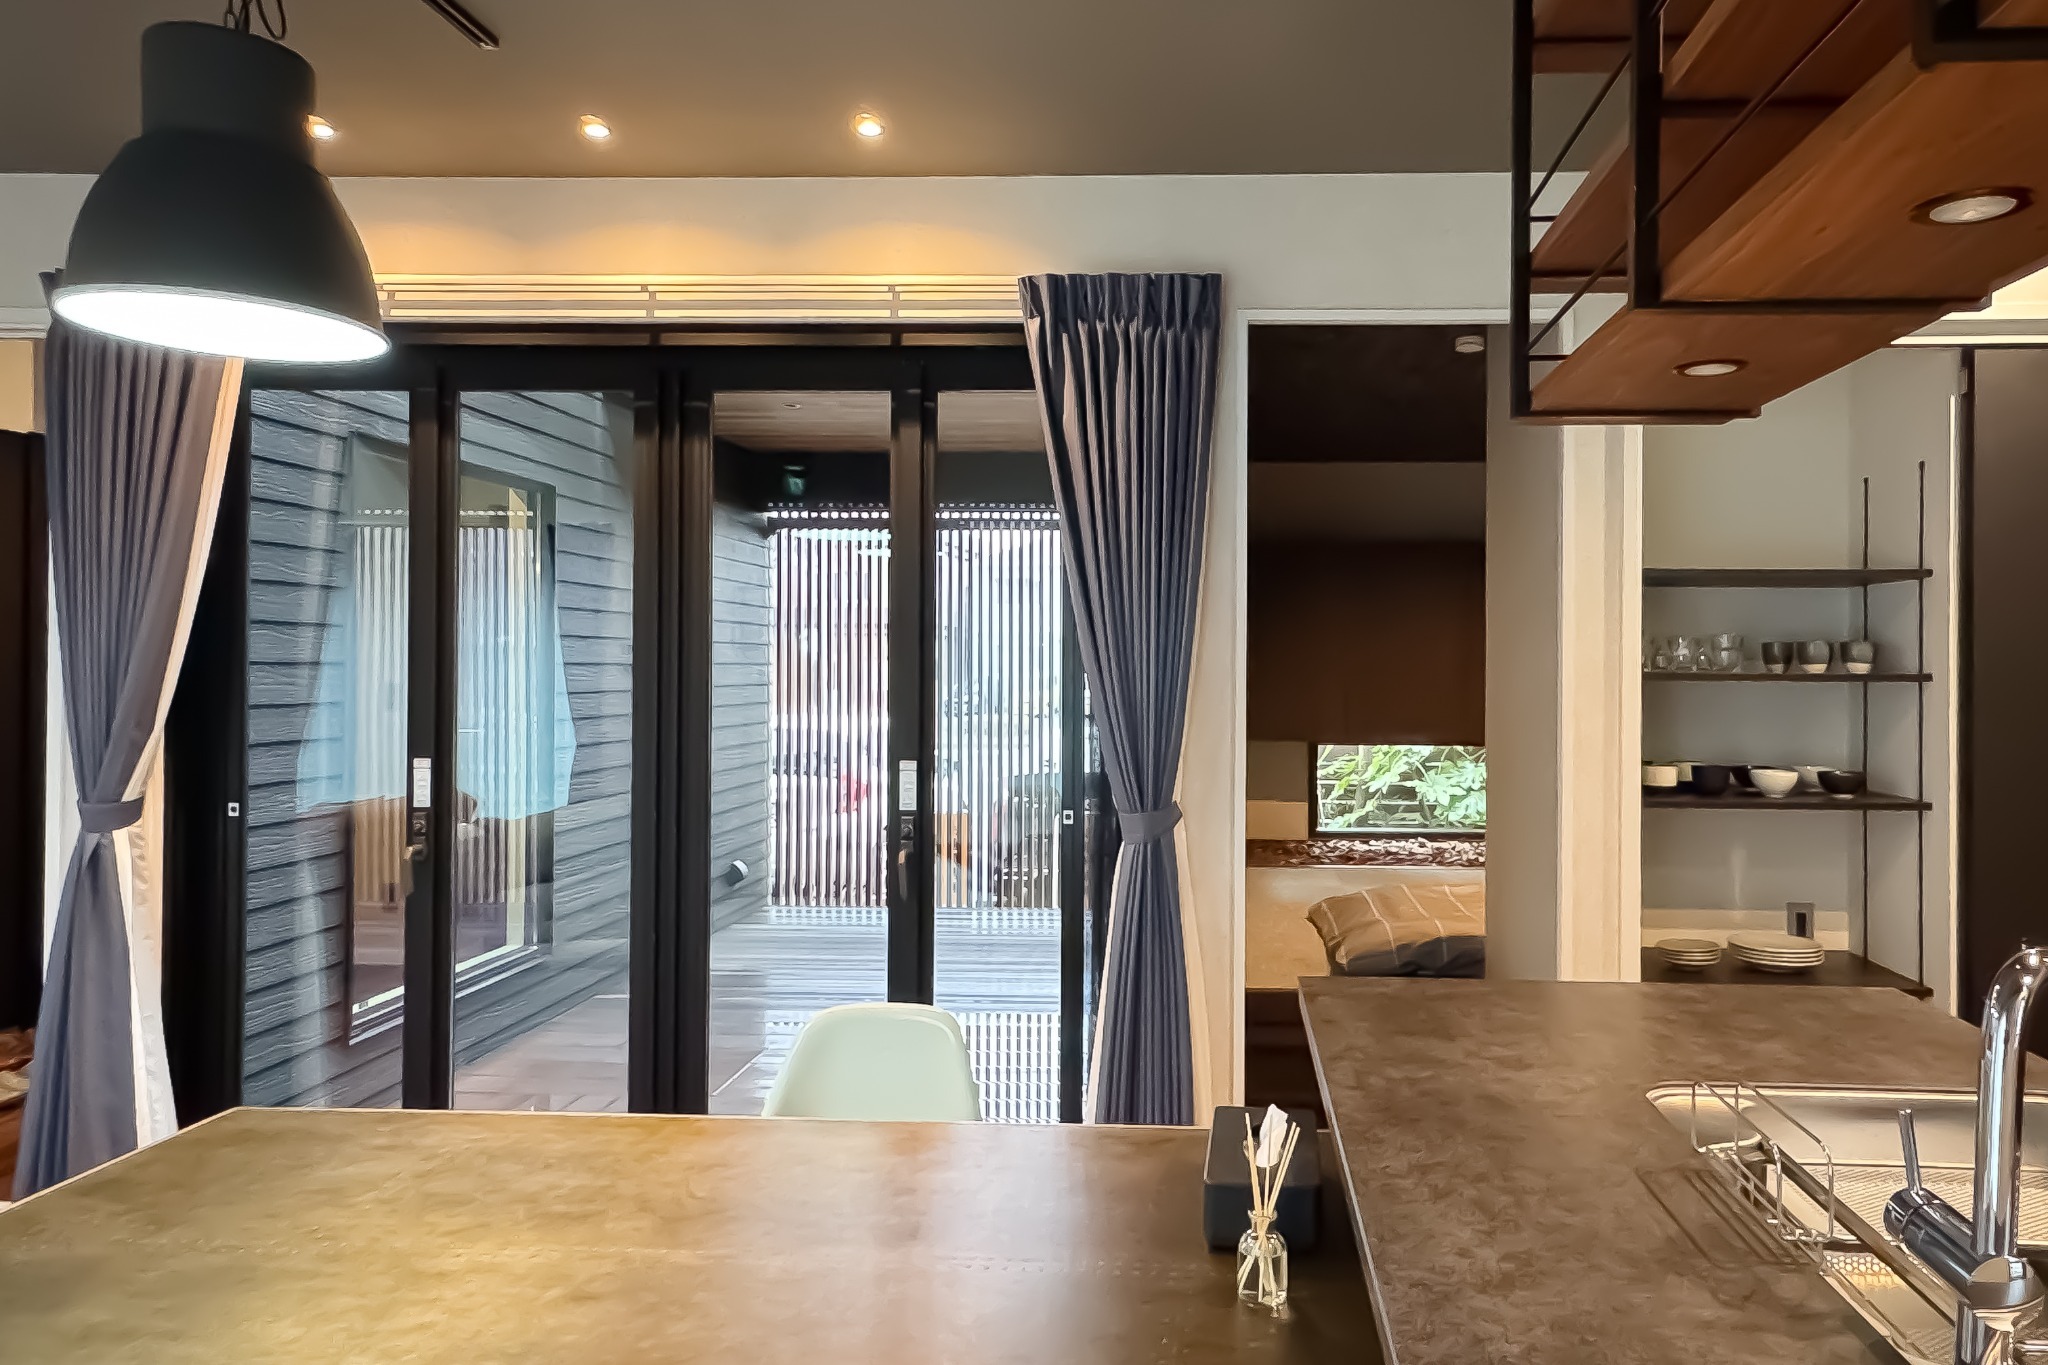 新築一軒家貸切 北九州旅行の拠点にぴったりの宿。Casa Stay Kokura